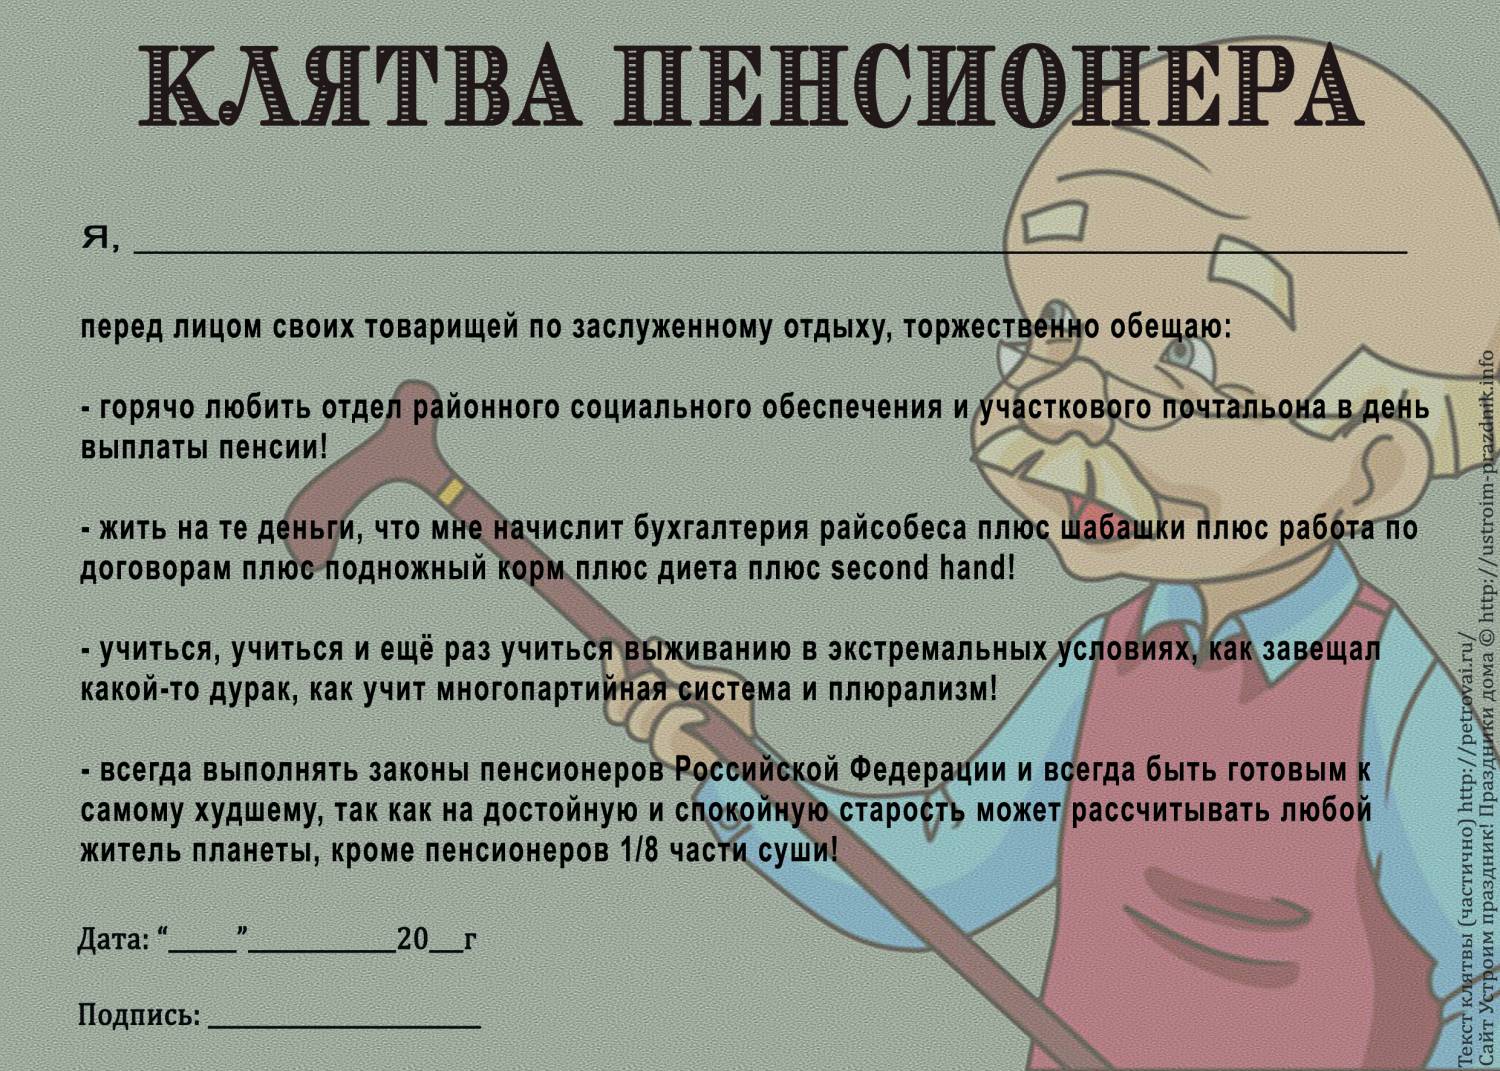 Шуточная клятва пенсионера ��������: http://ustroim-prazdnik.info/publ/podgotovka_k_prazdniku/diplomy_gramoty/shutochnaja_kljatva_pensionera/66-1-0-716